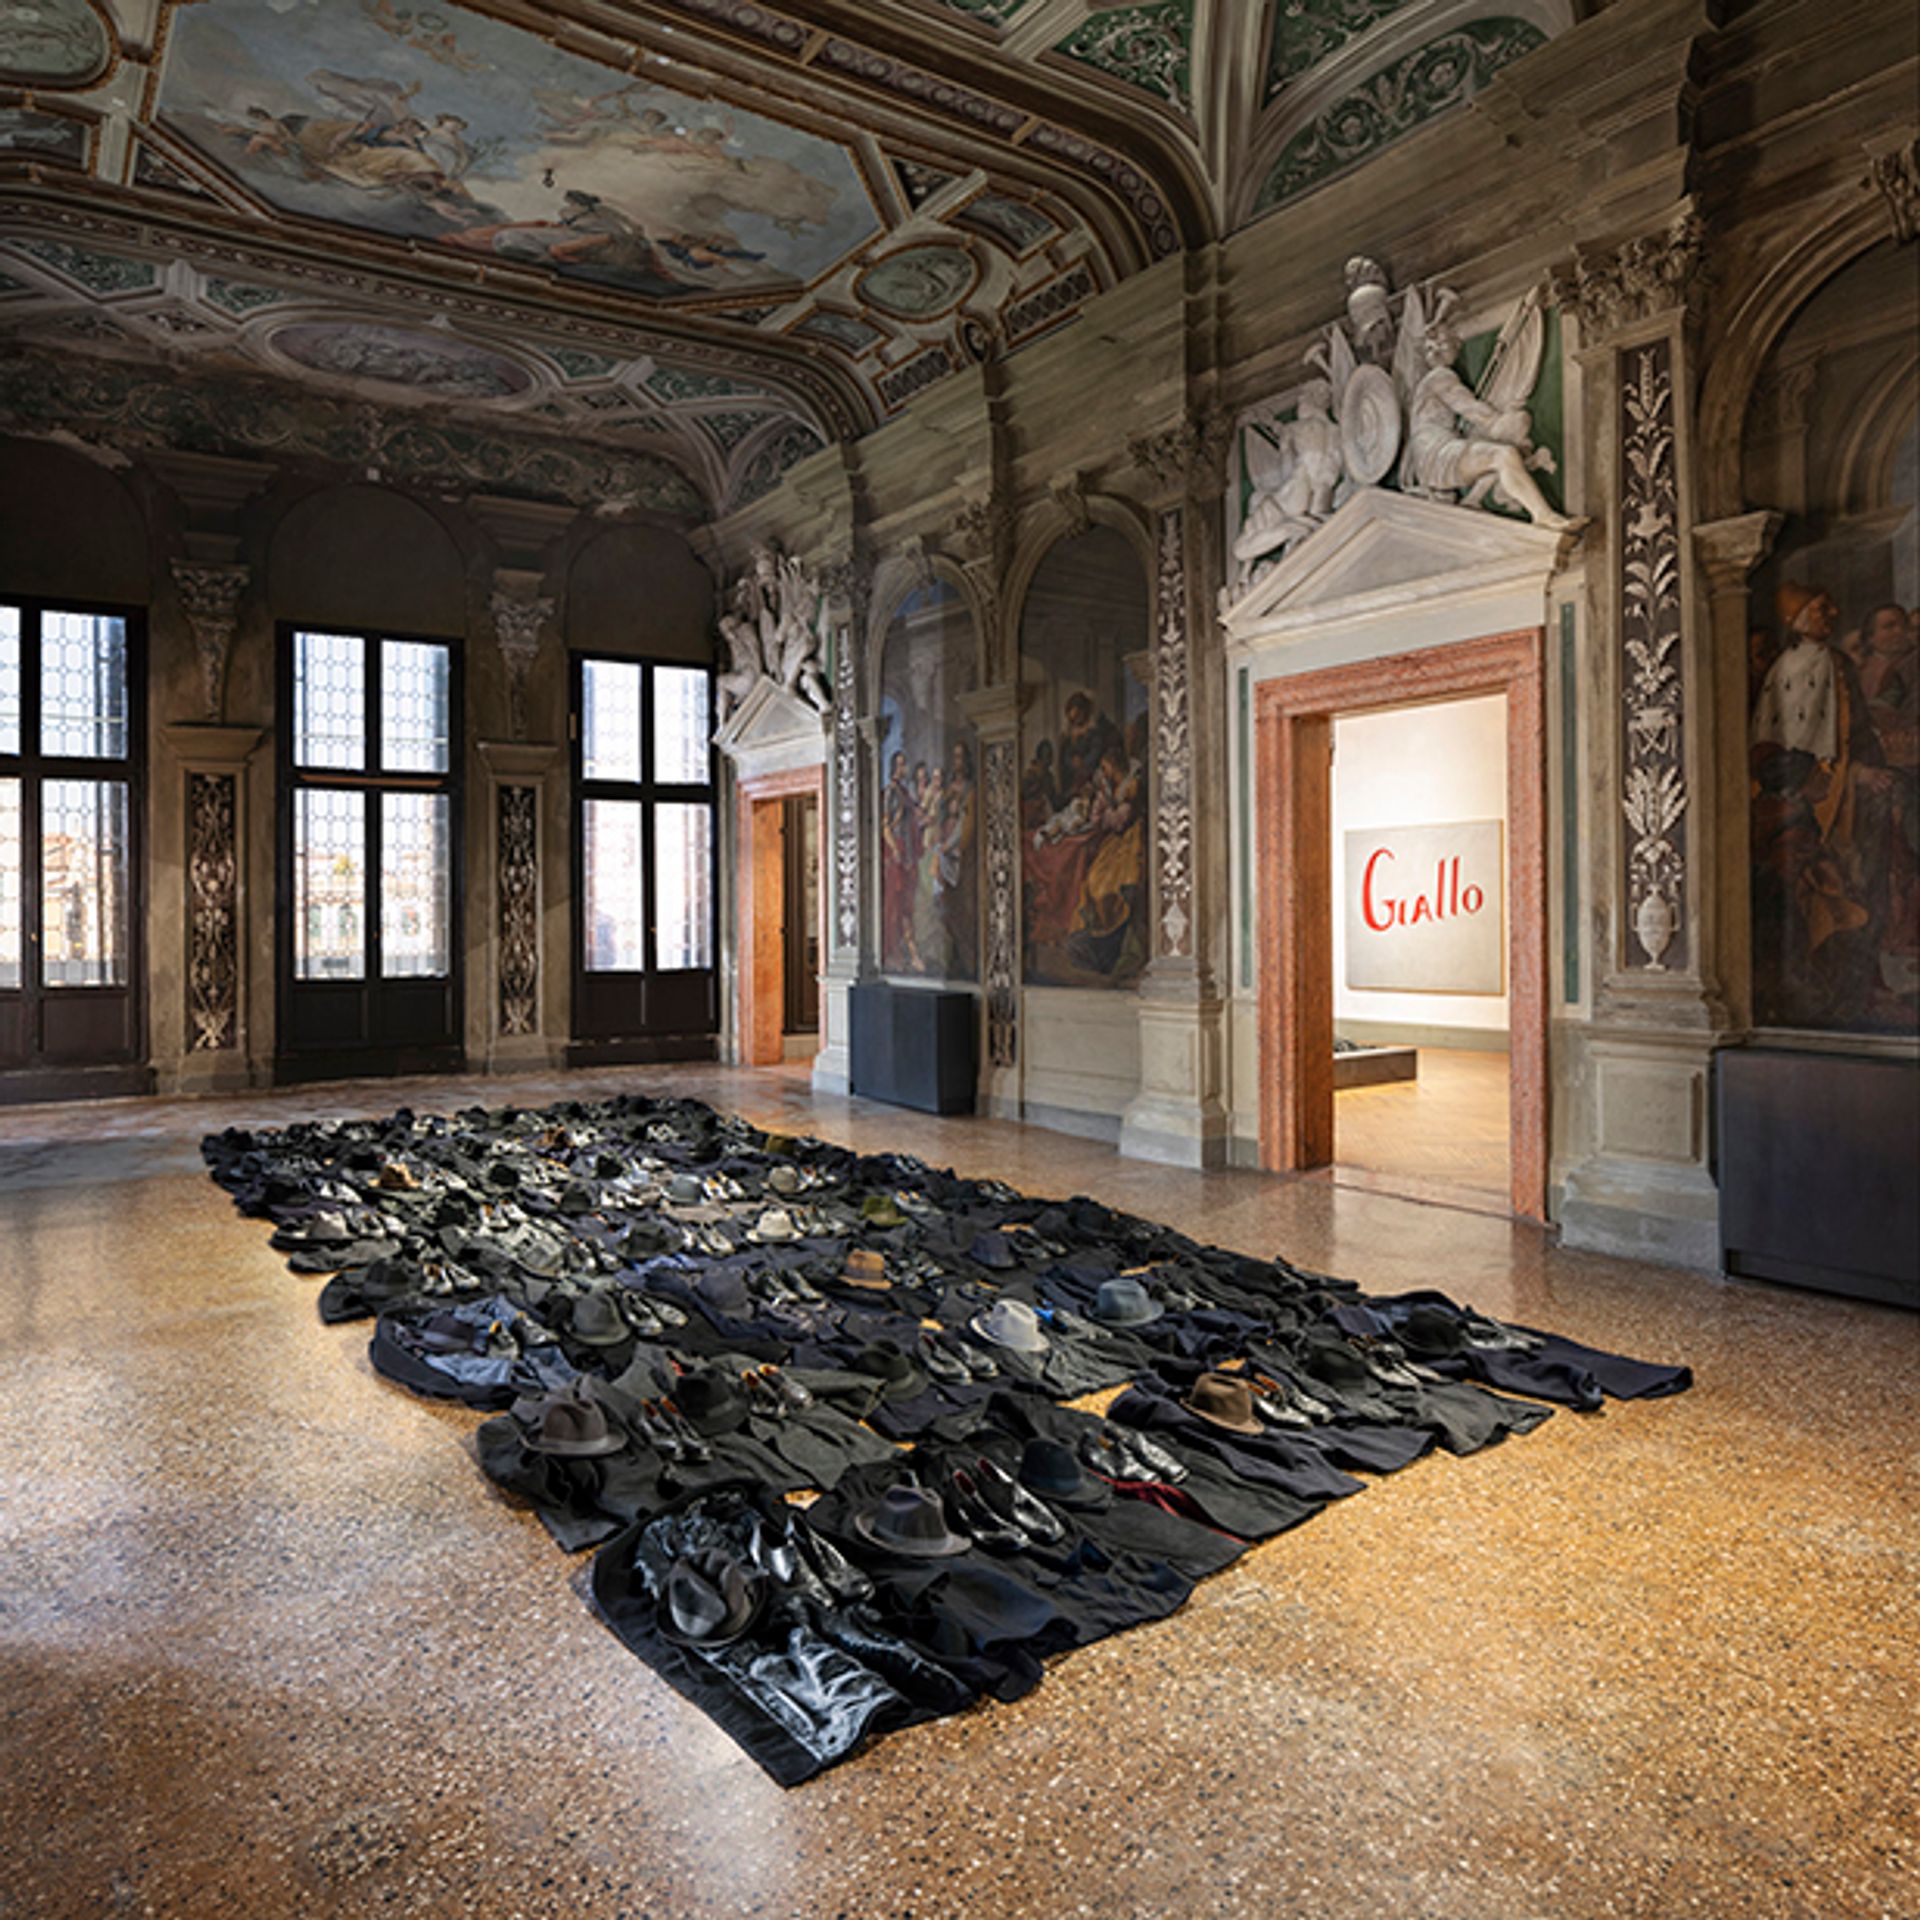 Jannis Kounellis's Untitled (2011) Courtesy of Fondazione Prada. Photo: Agostino Osio - Alto Piano